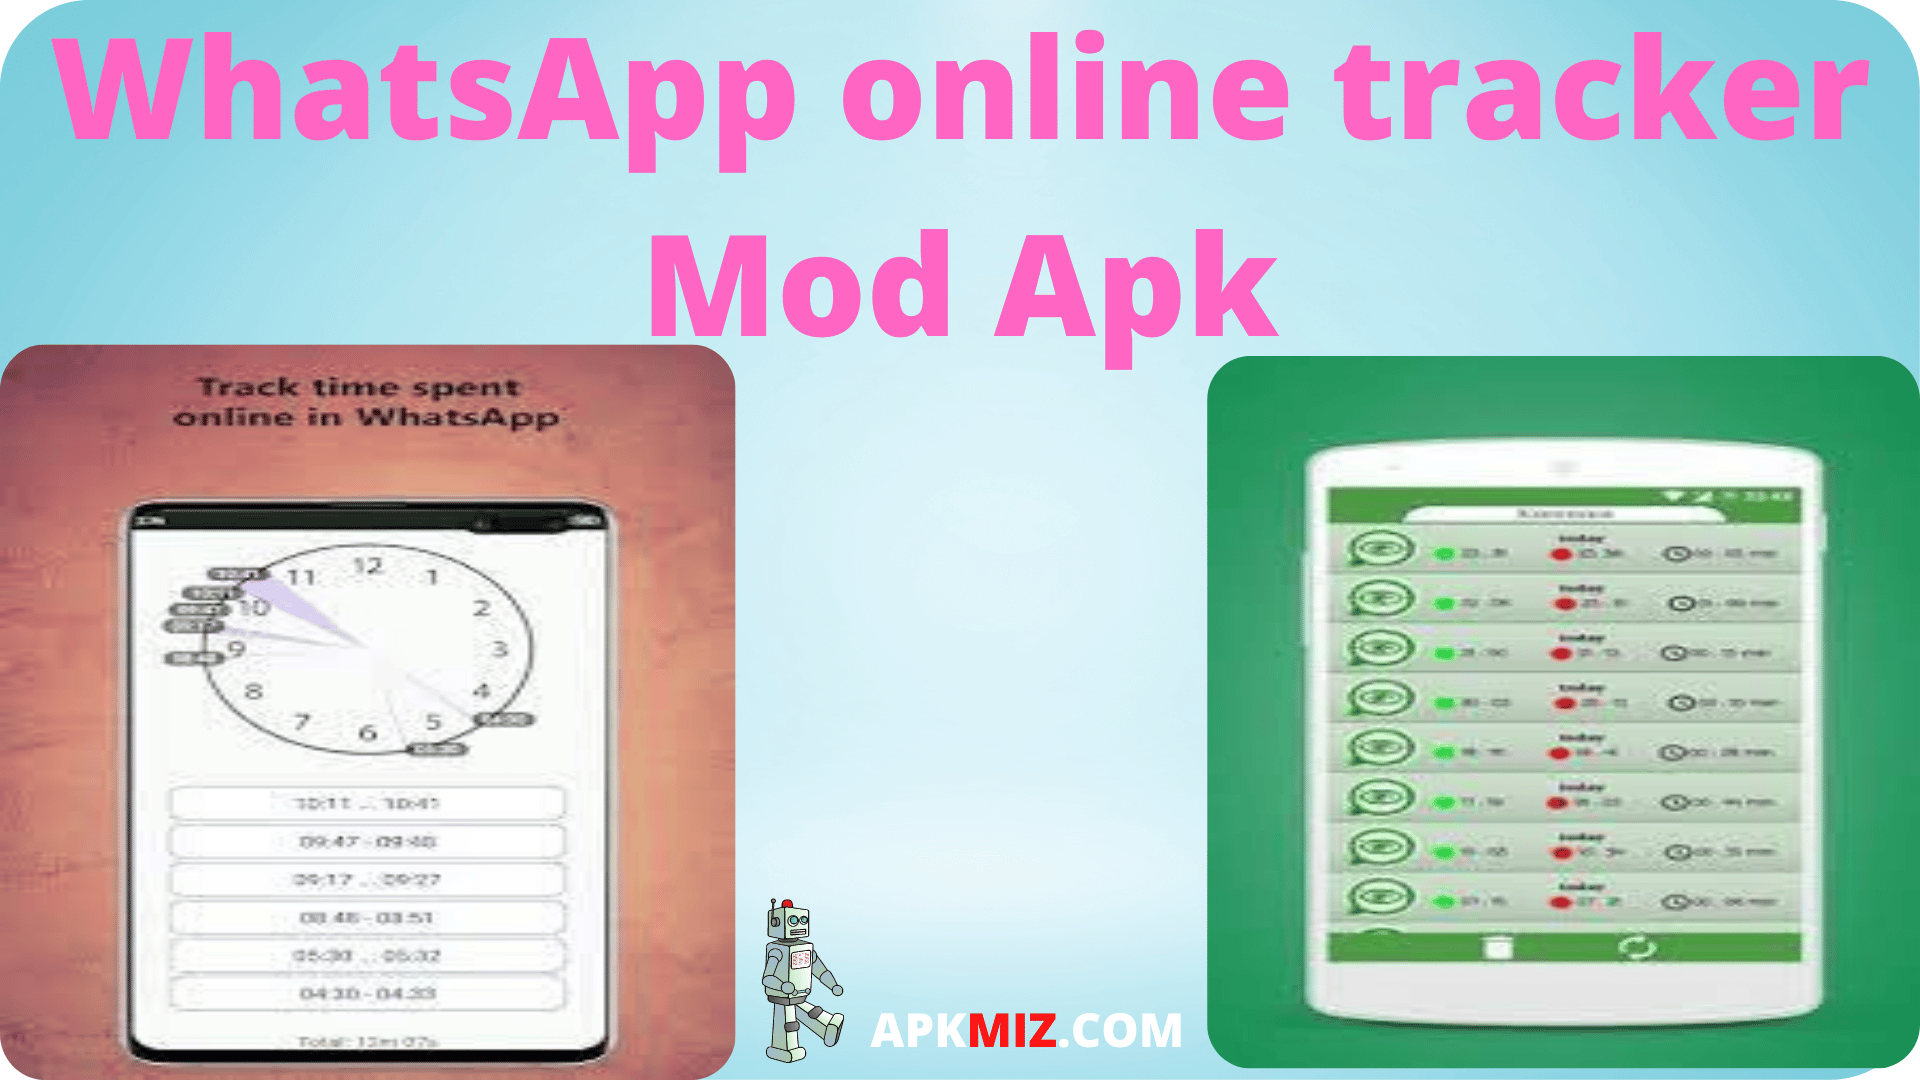 WhatsApp online tracker Mod Apk